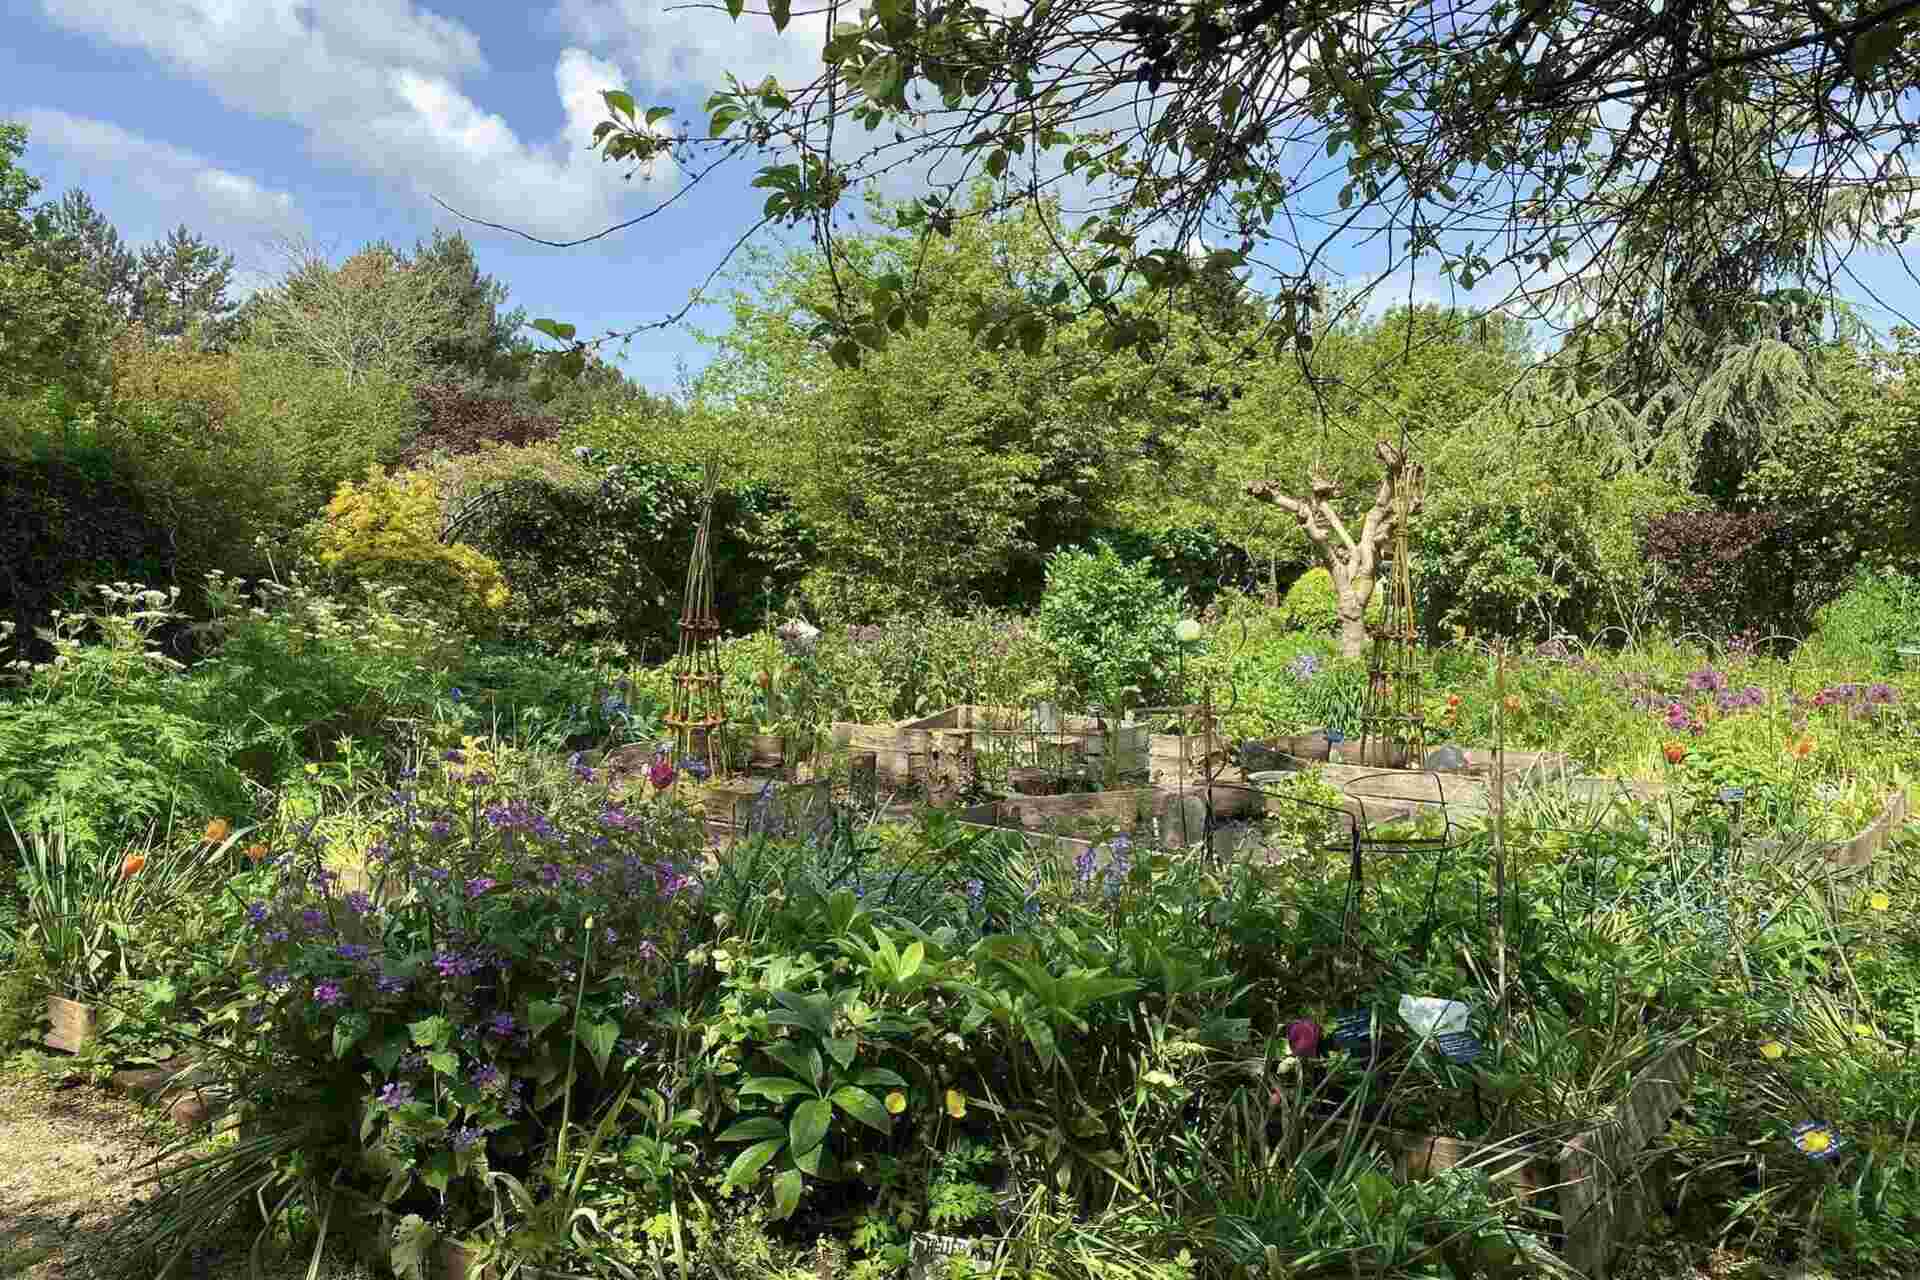 TWIGS garden in Swindon